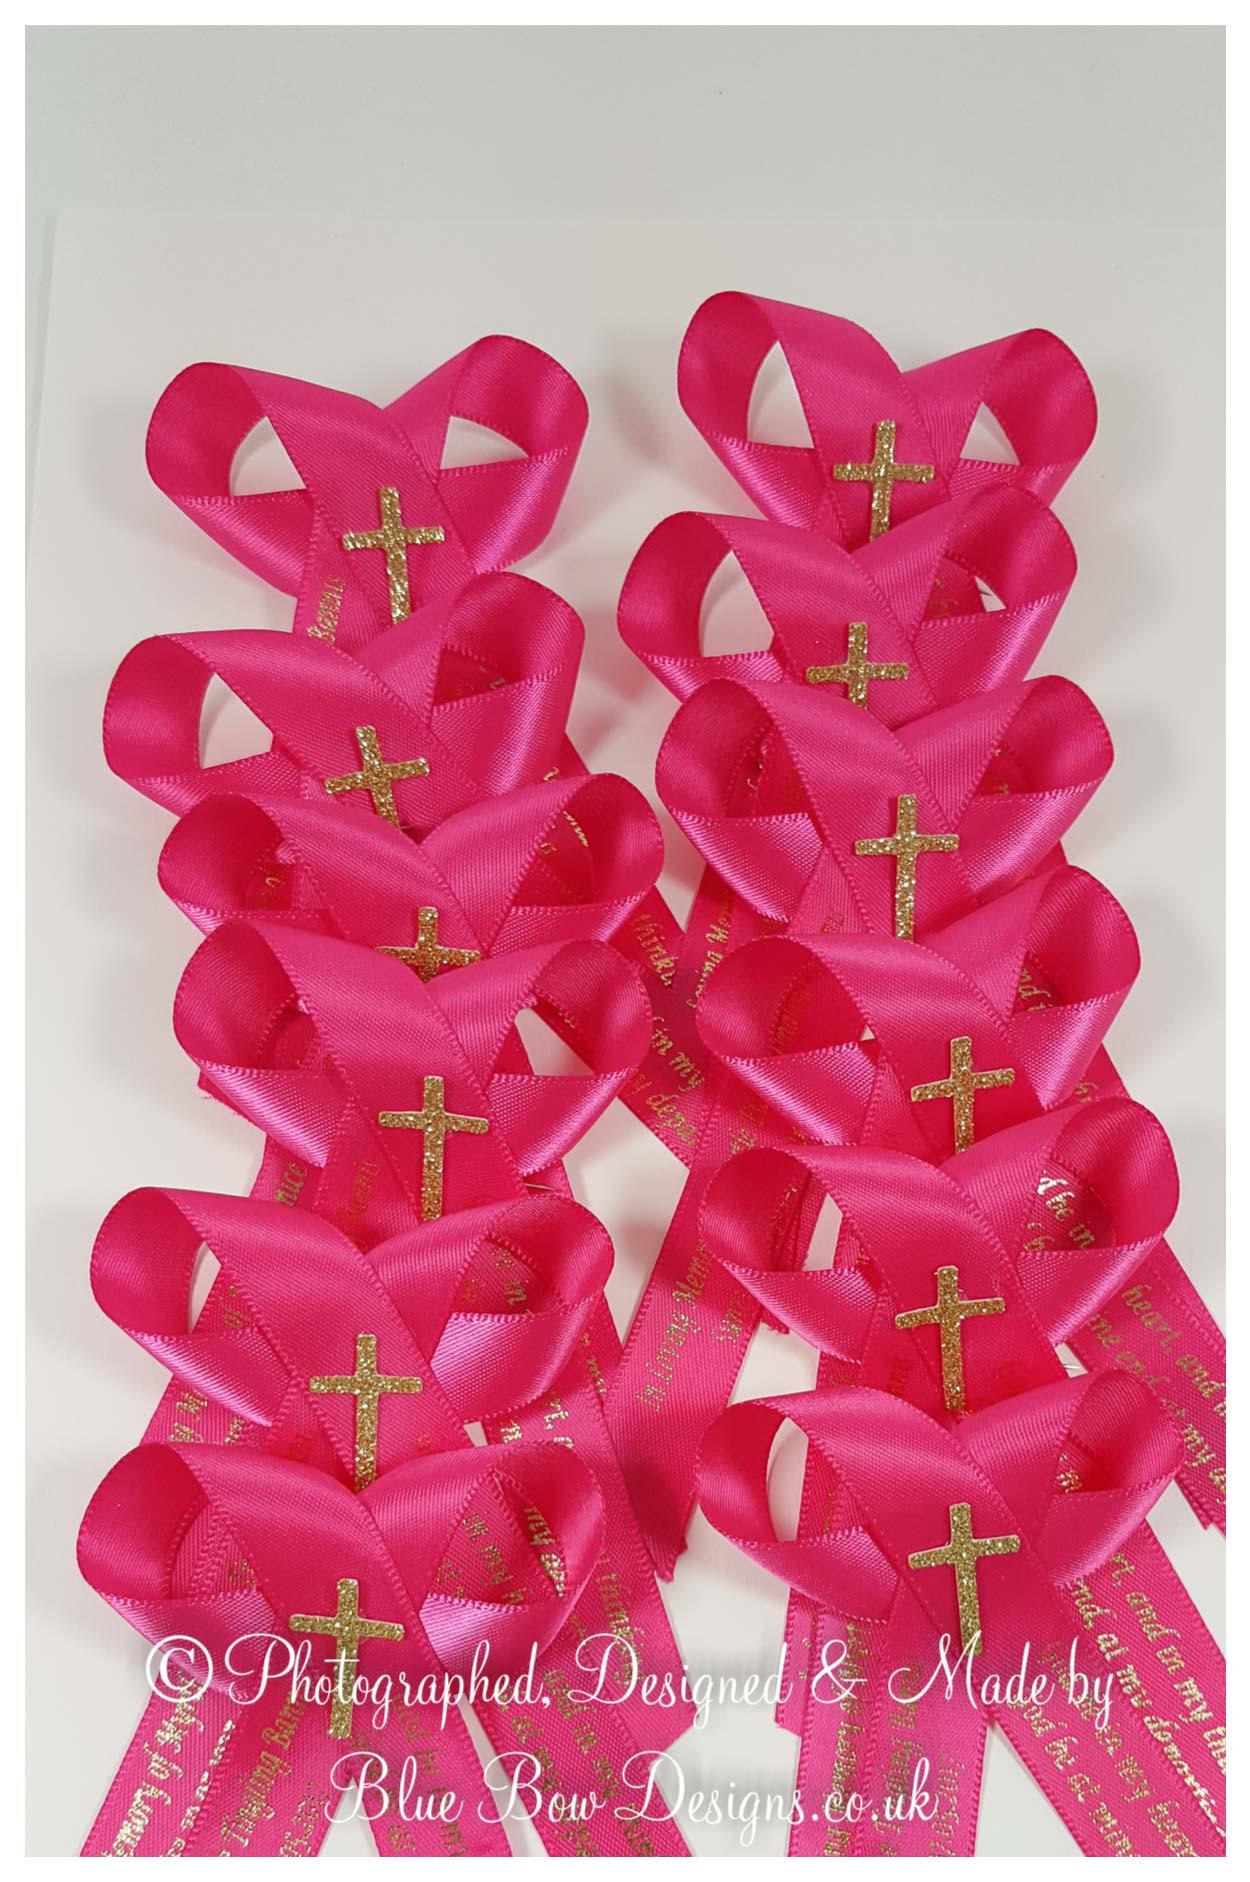 Fuchsia pink memorial ribbons